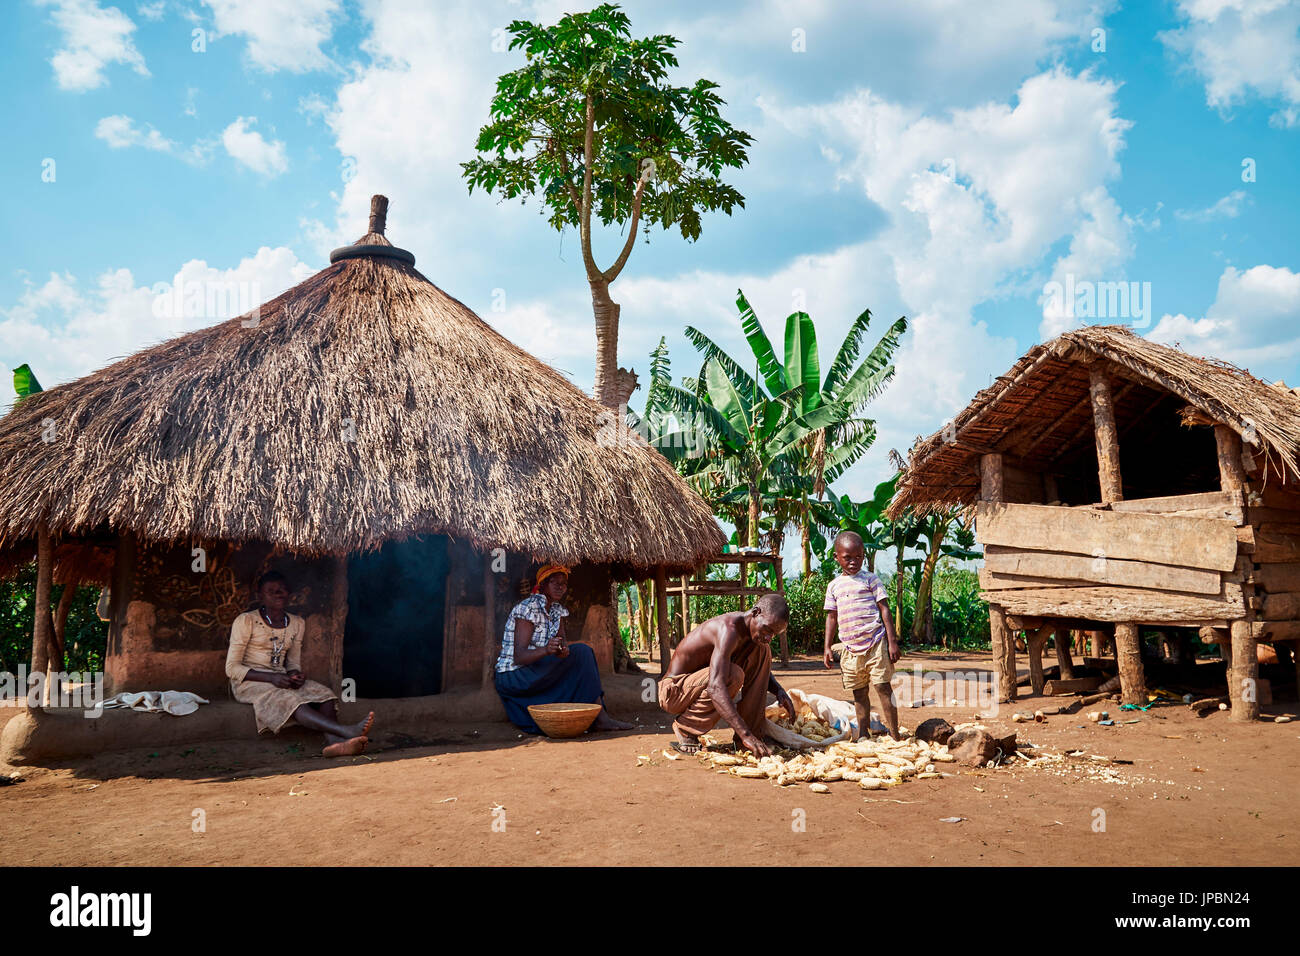 Le travail traditionnel dans un village tribal de l'Afrique, le Parc national Queen Elizabeth, Kasese, Rwenzururu sous-région, l'ouest de l'Ouganda, l'Ouganda, l'Afrique Banque D'Images